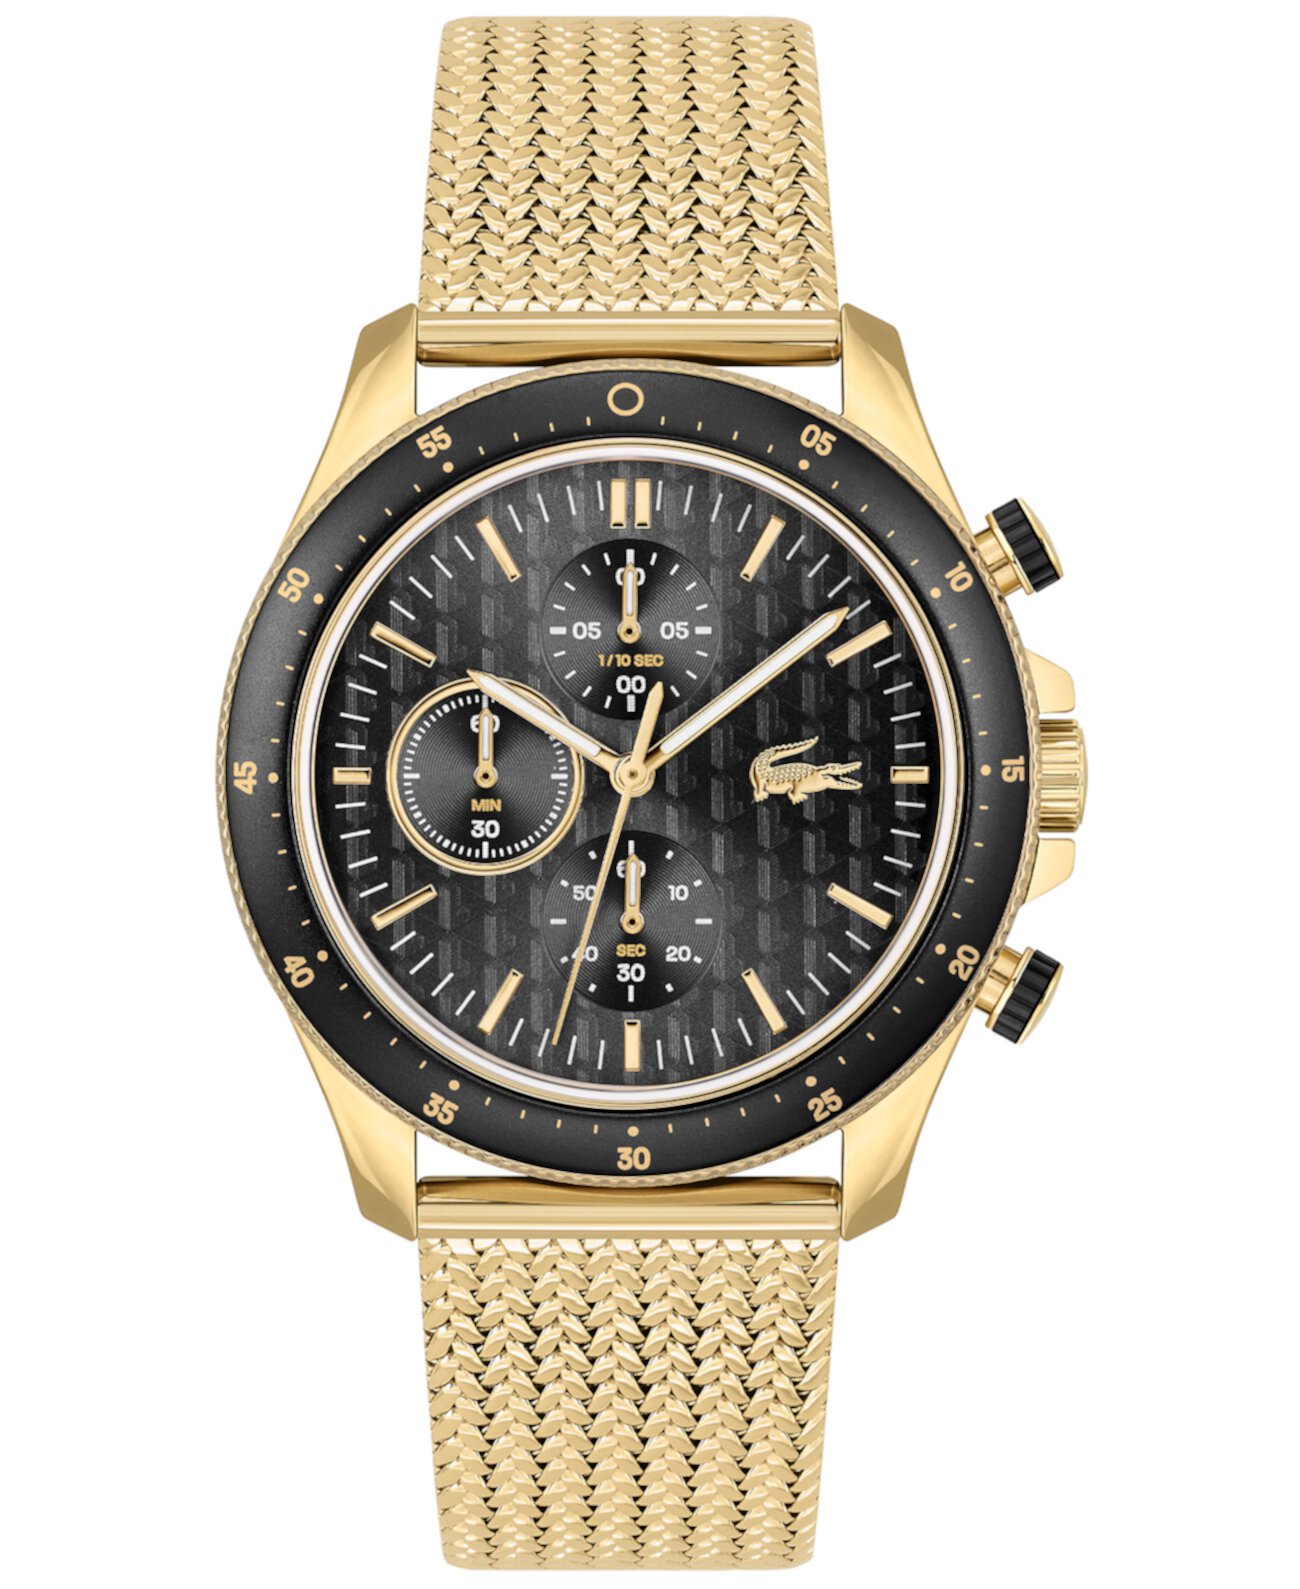 Мужские часы Neoheritage золотистого цвета с сетчатым браслетом 42 мм Lacoste